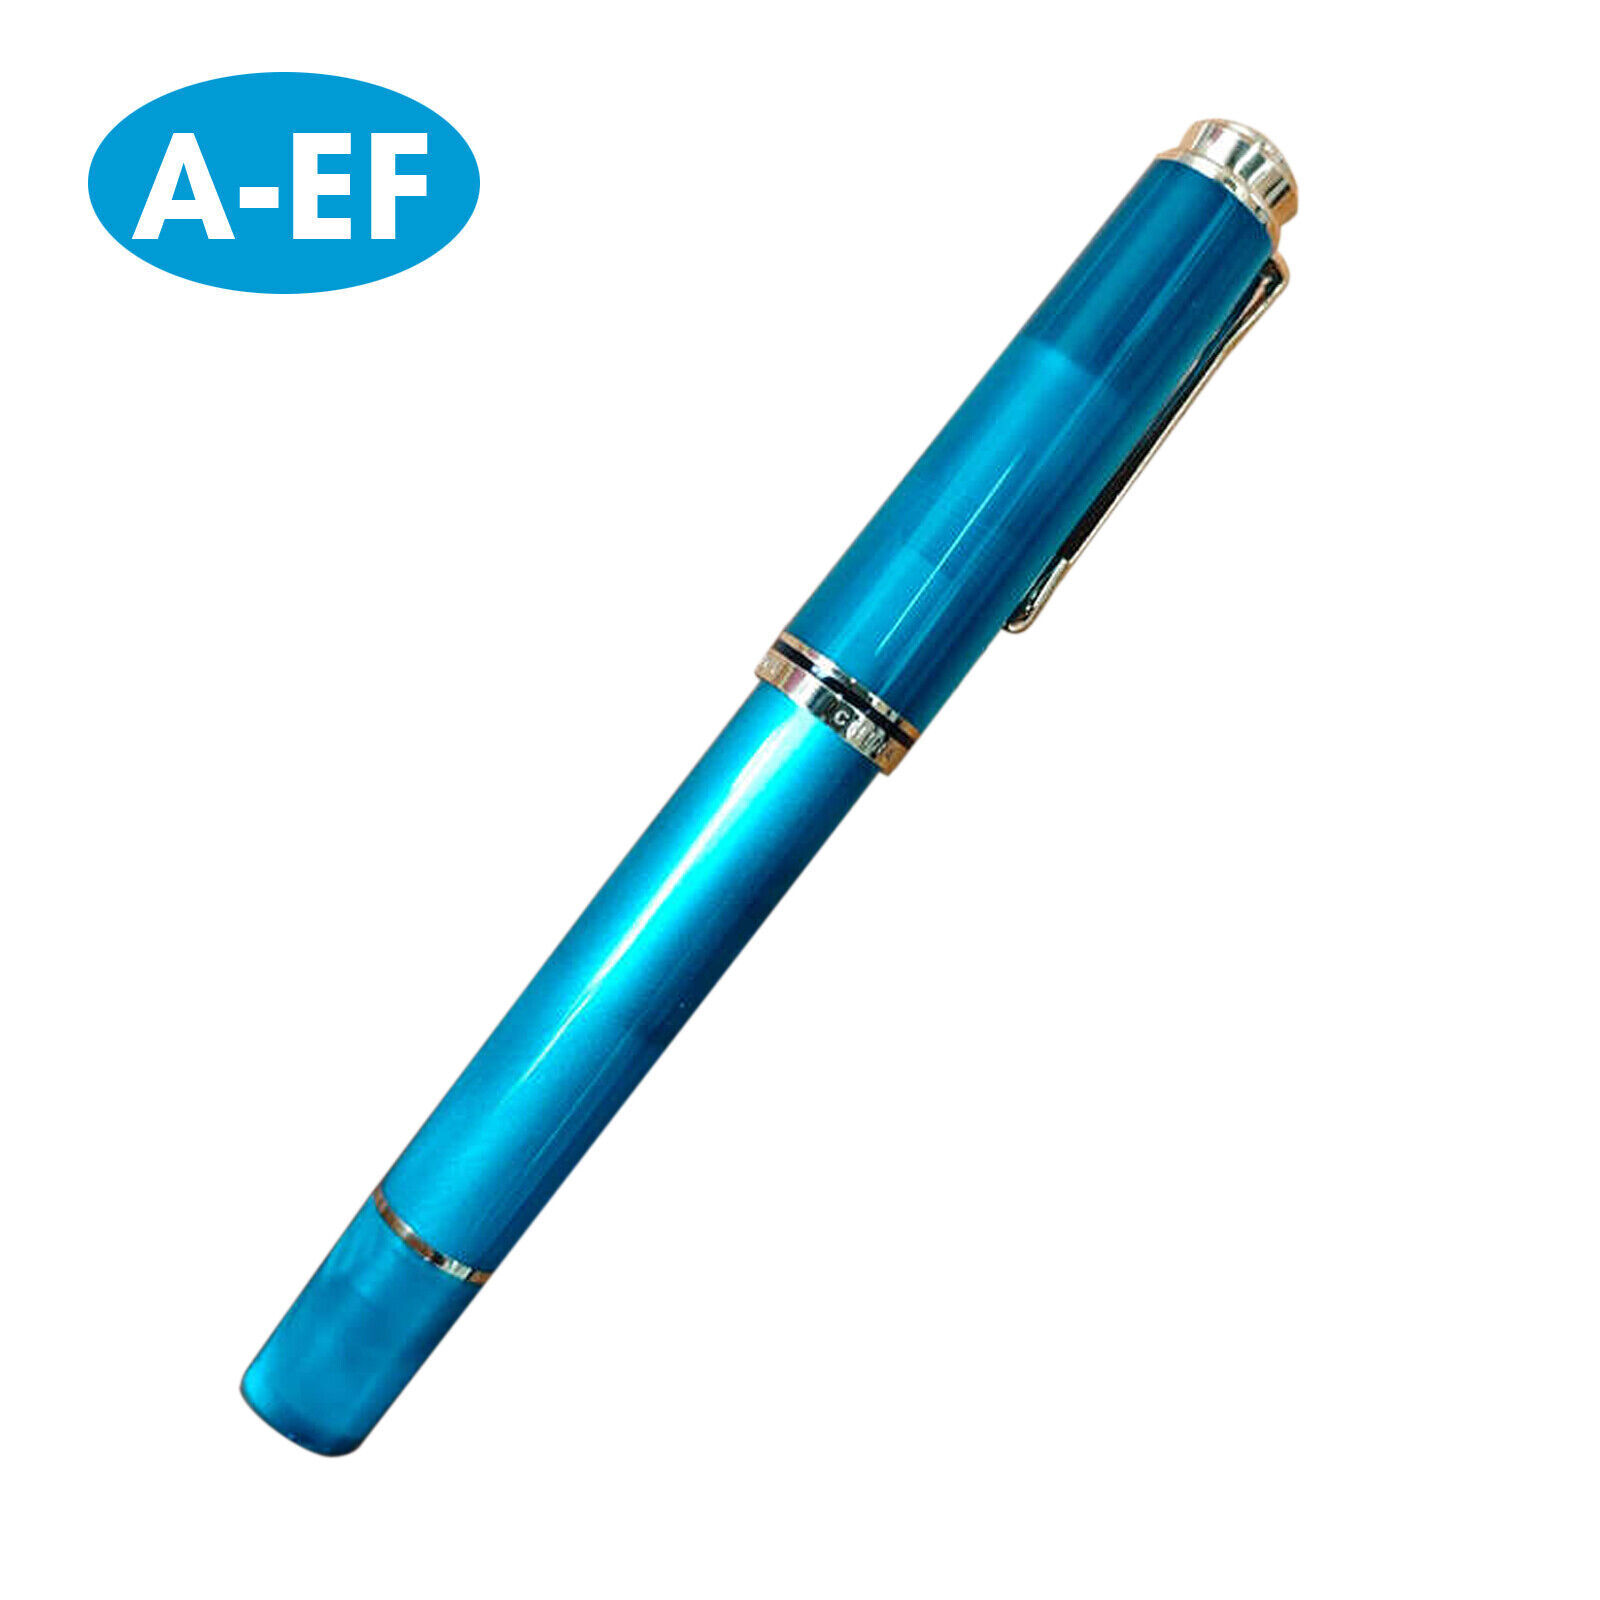 ADMOK 400 Acrylic Piston Fountain Pen Schmidt Soft Smooth #5 Nib EF/F/M NibM6T1R